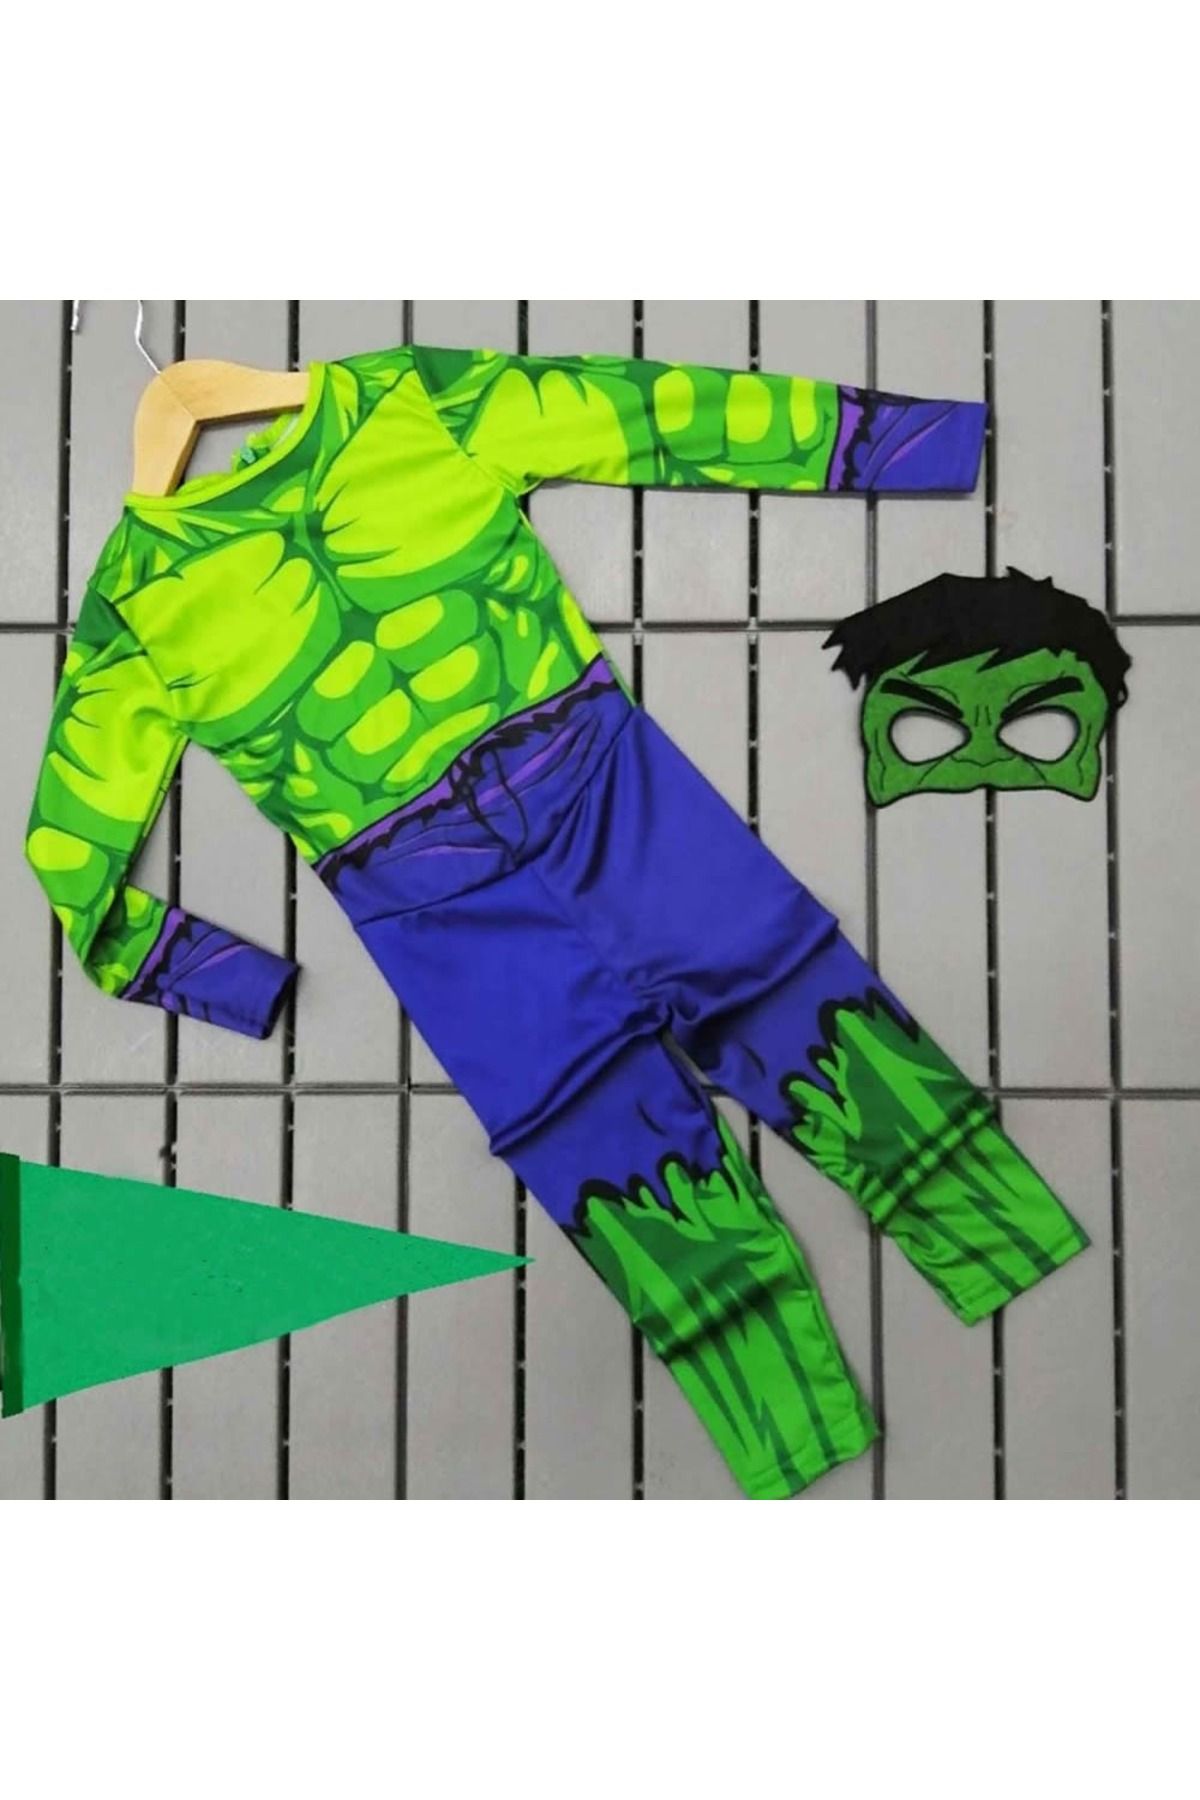 Hulk Maskeli Hulk Çocuk Kostümü